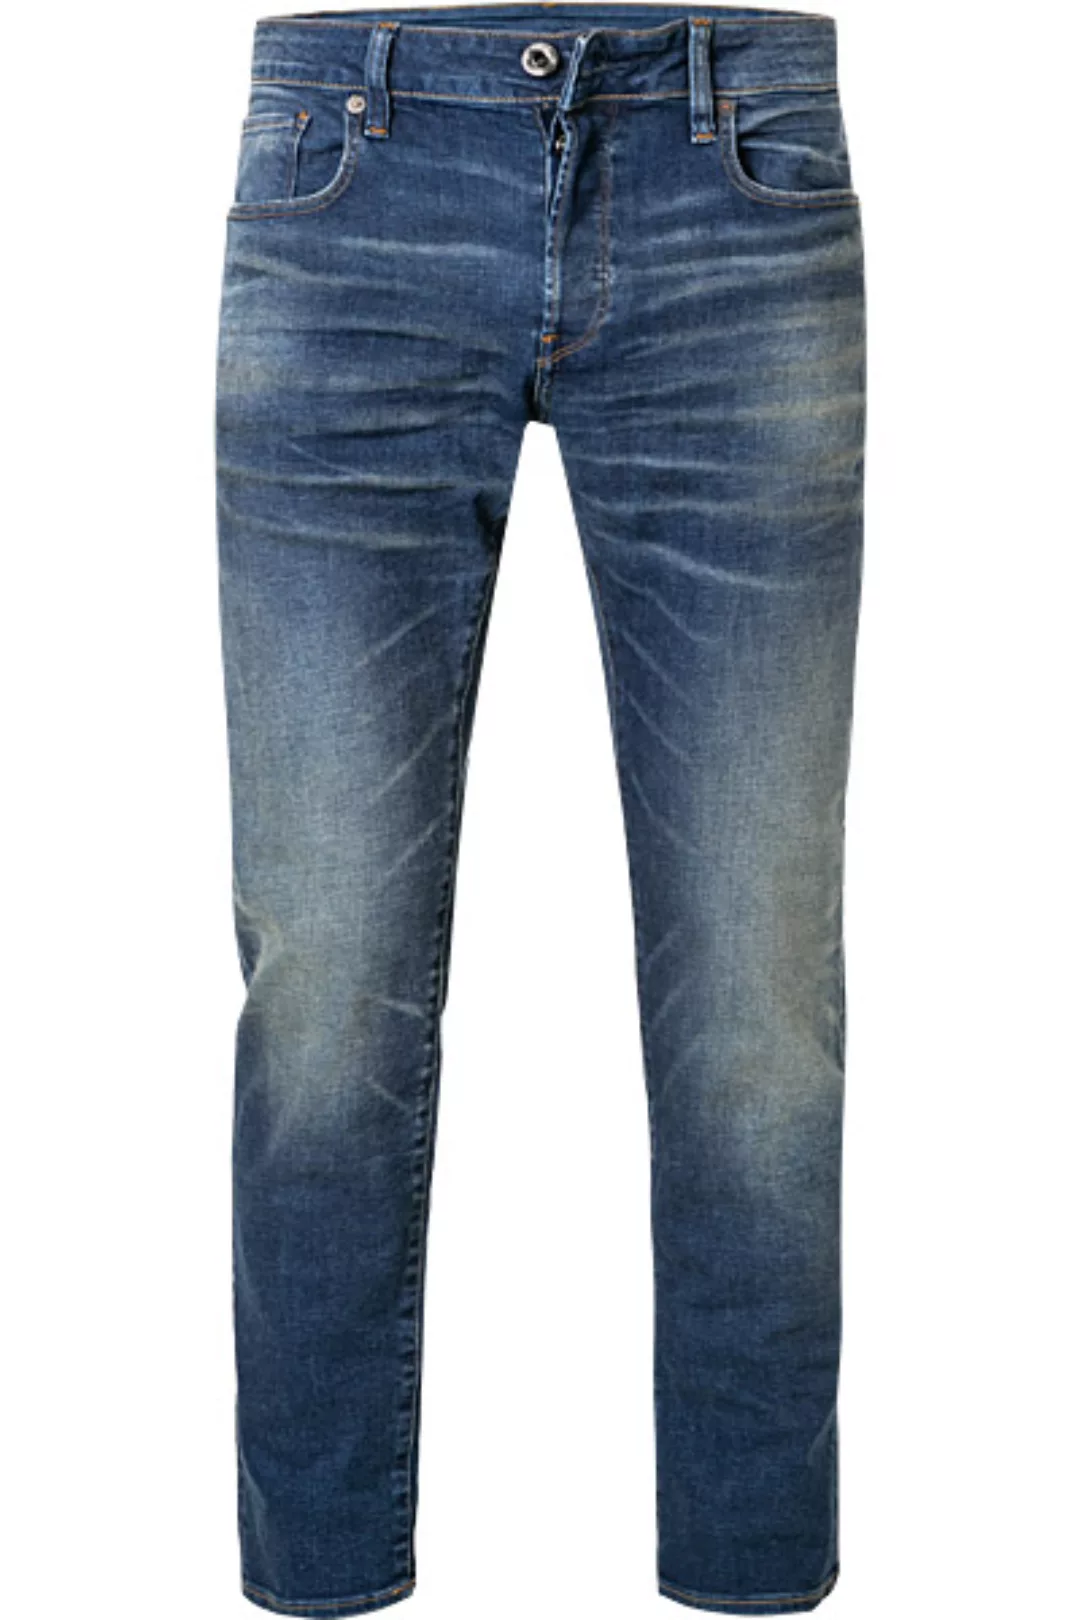 G-Star Herren Jeans 3301 Slim Fit - Blau - Worker Blue Faded günstig online kaufen